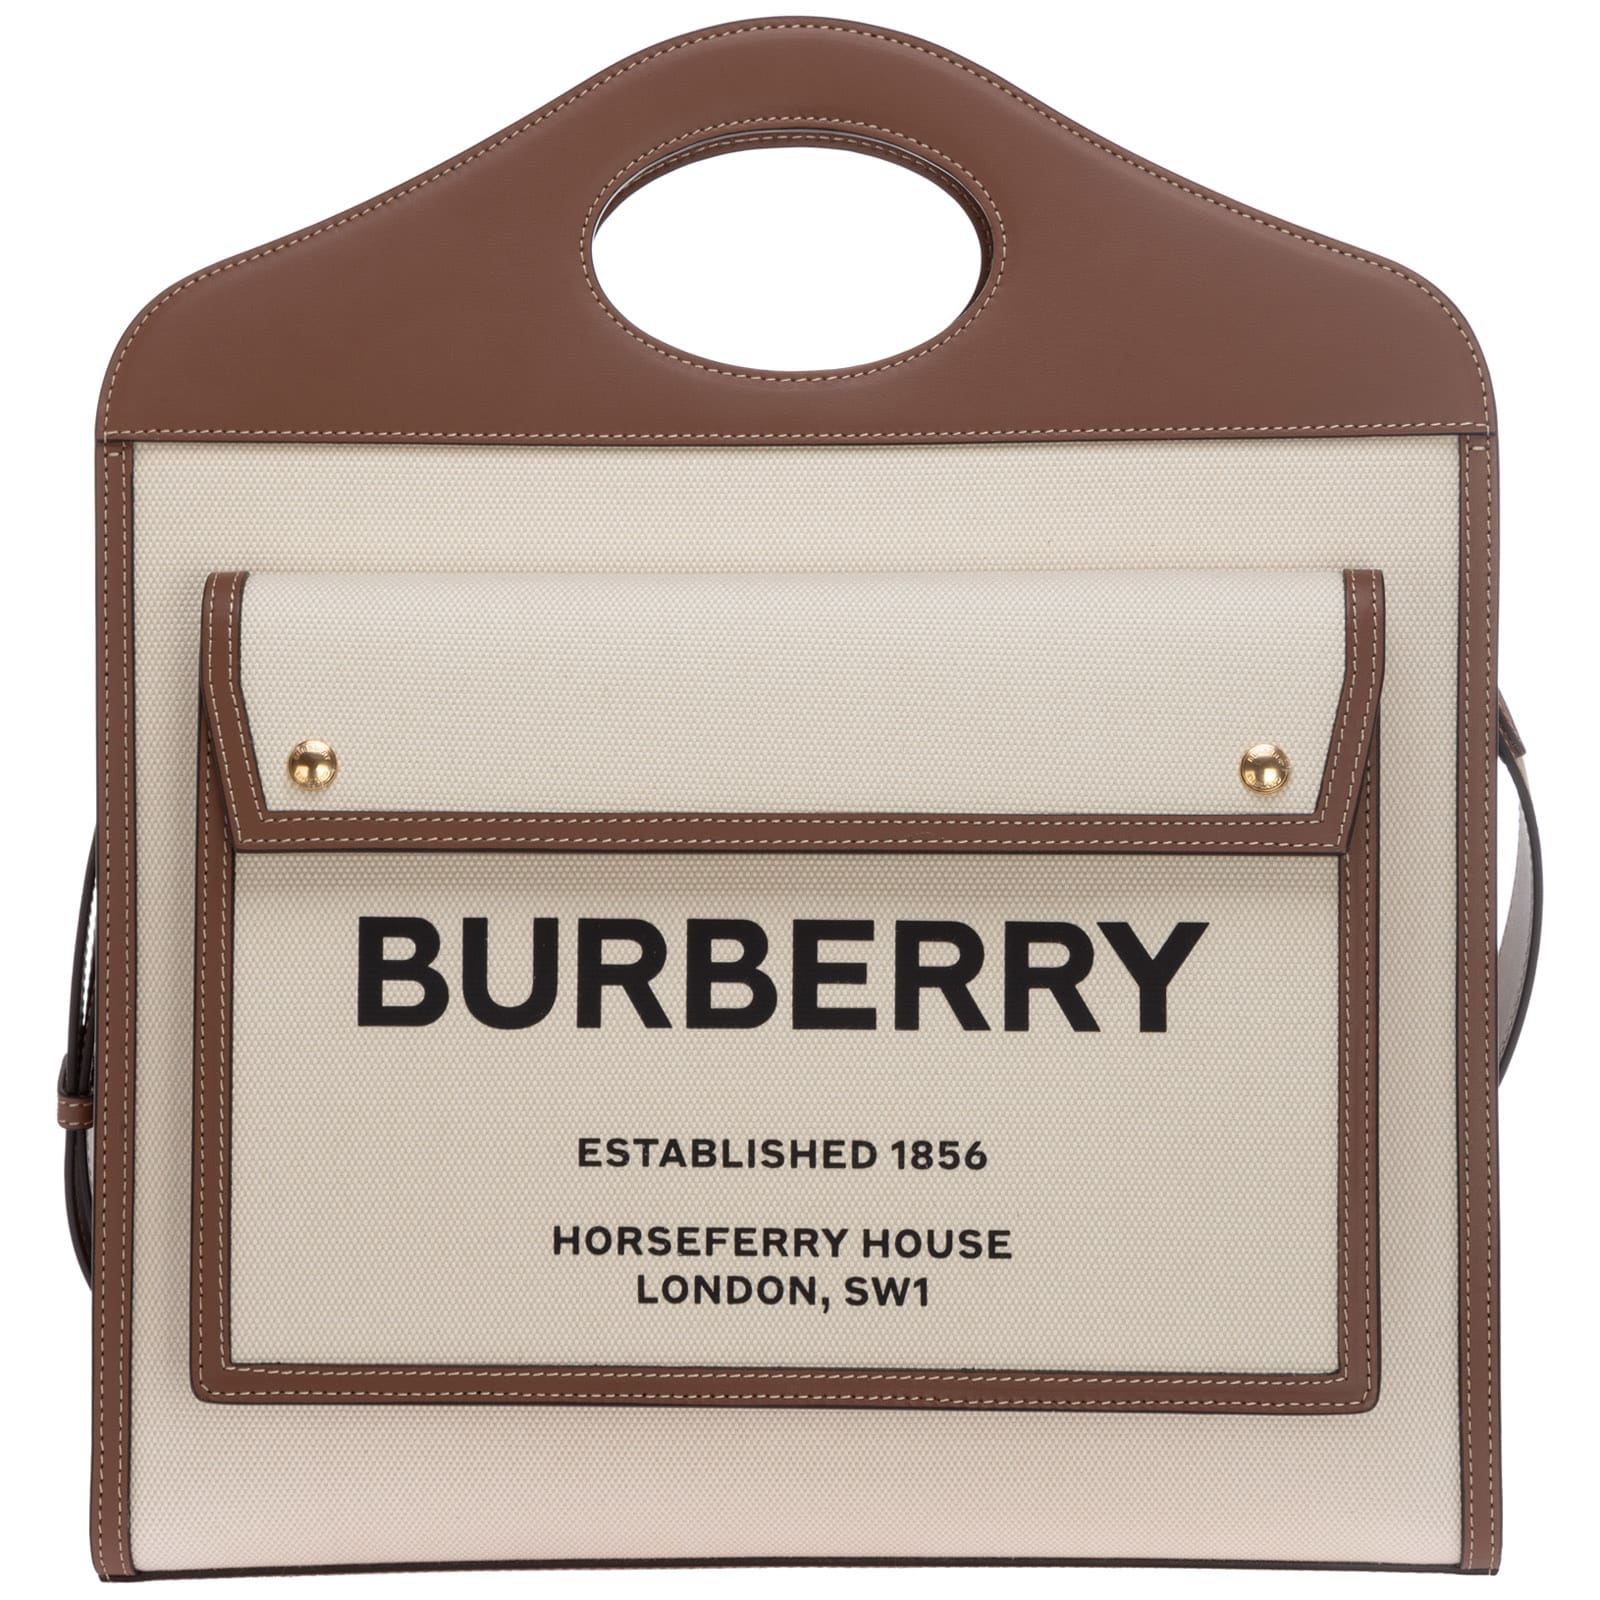 BURBERRY POCKET SHOULDER BAG,11786712